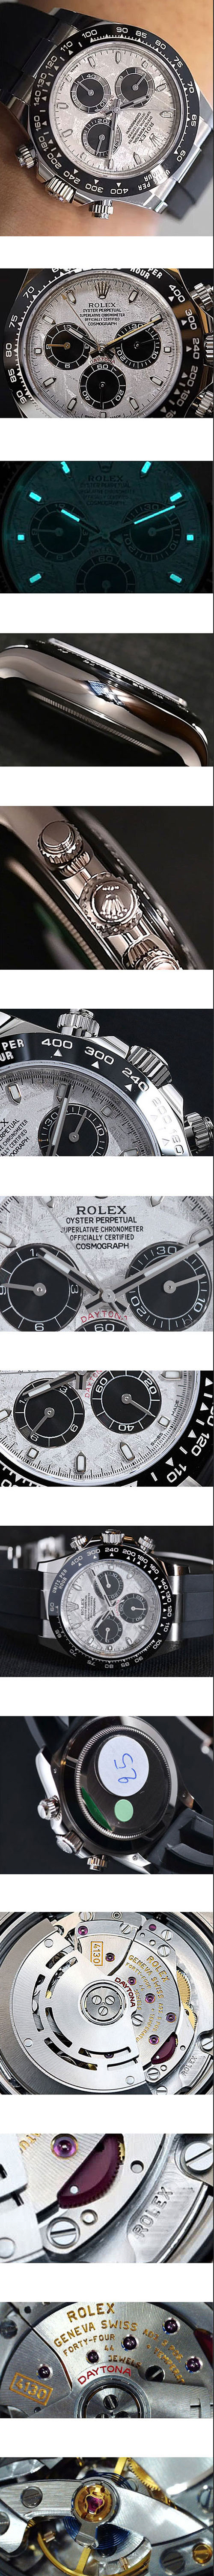 最新入荷 ROLEX スーパーコピー時計 デイトナ 7750ムーブ搭載！M116519LN Automatic クロノグラフ 夜光